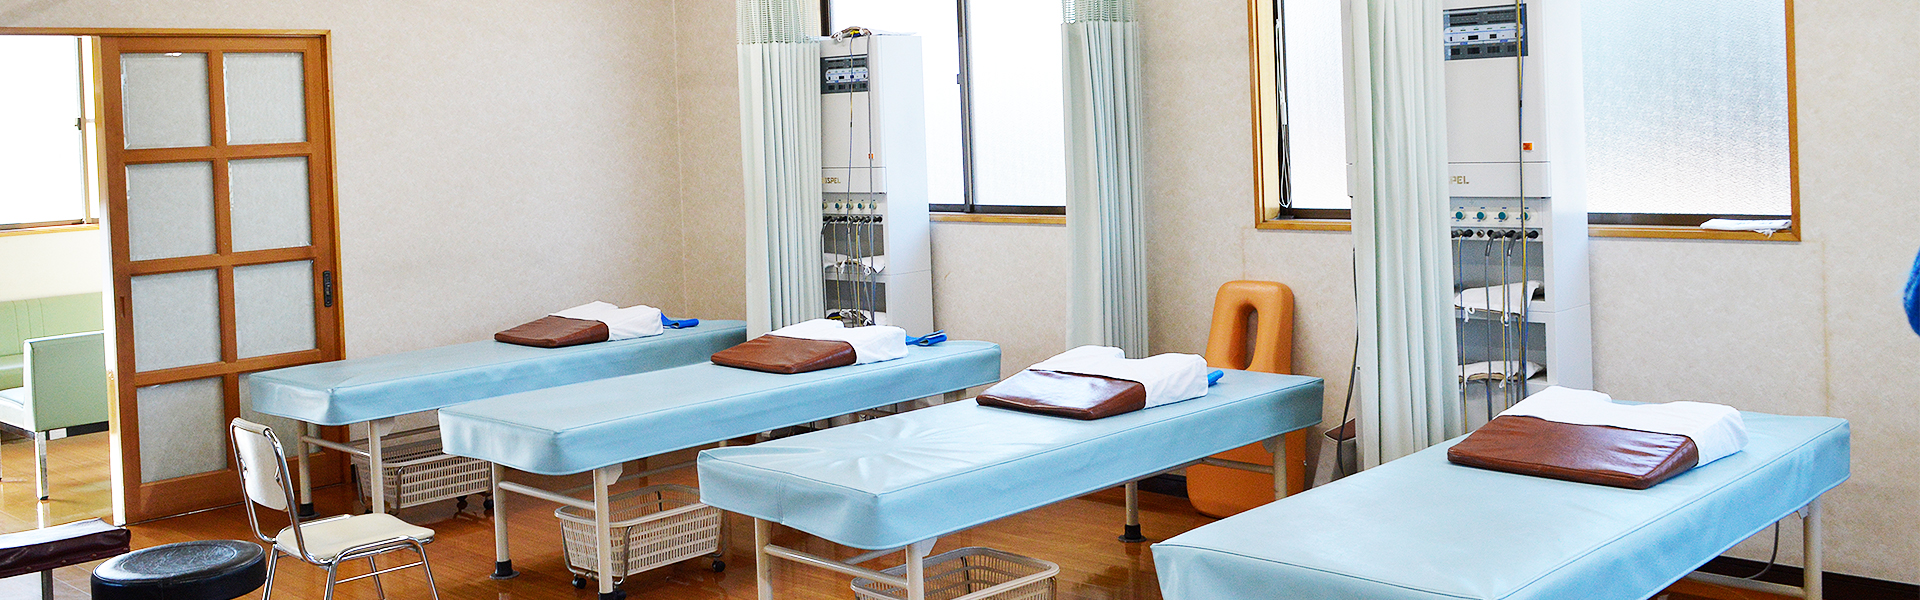 茨城県古河市の田島鍼灸接骨院は交通事故による怪我の治療からスポーツによる怪我、日常の体の痛みまでお任せいただけます。